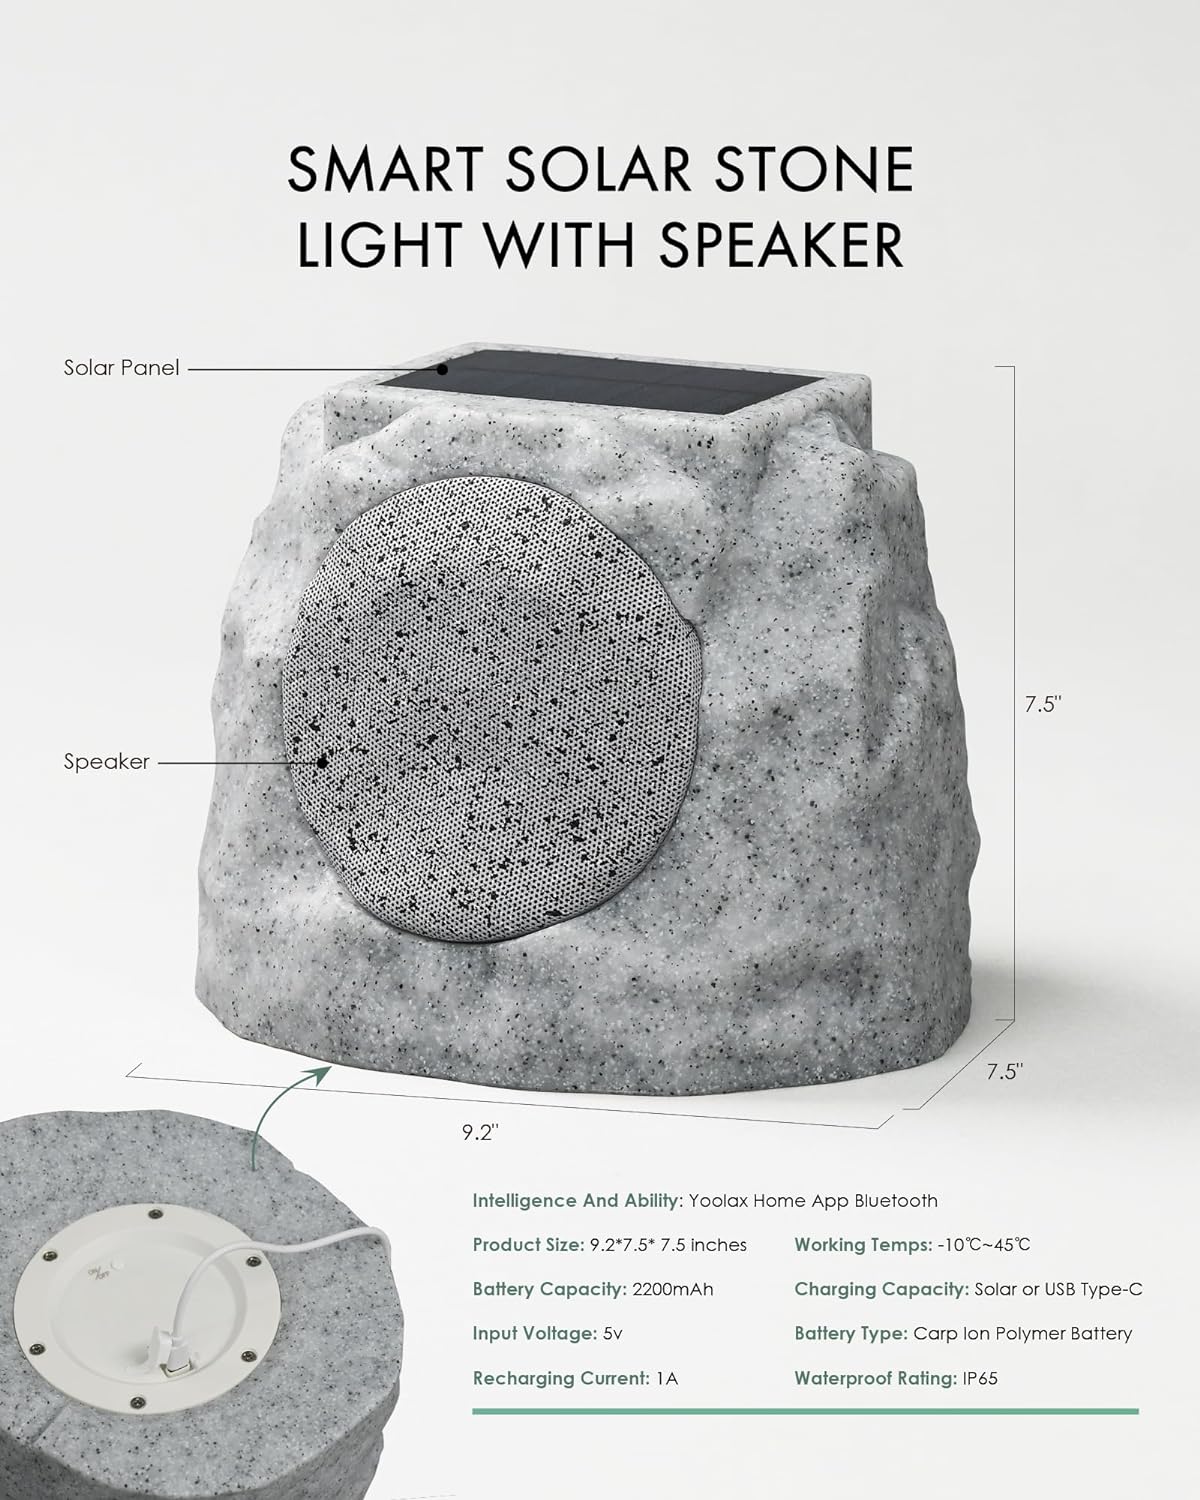 Smart Solar Stone Light with Speaker